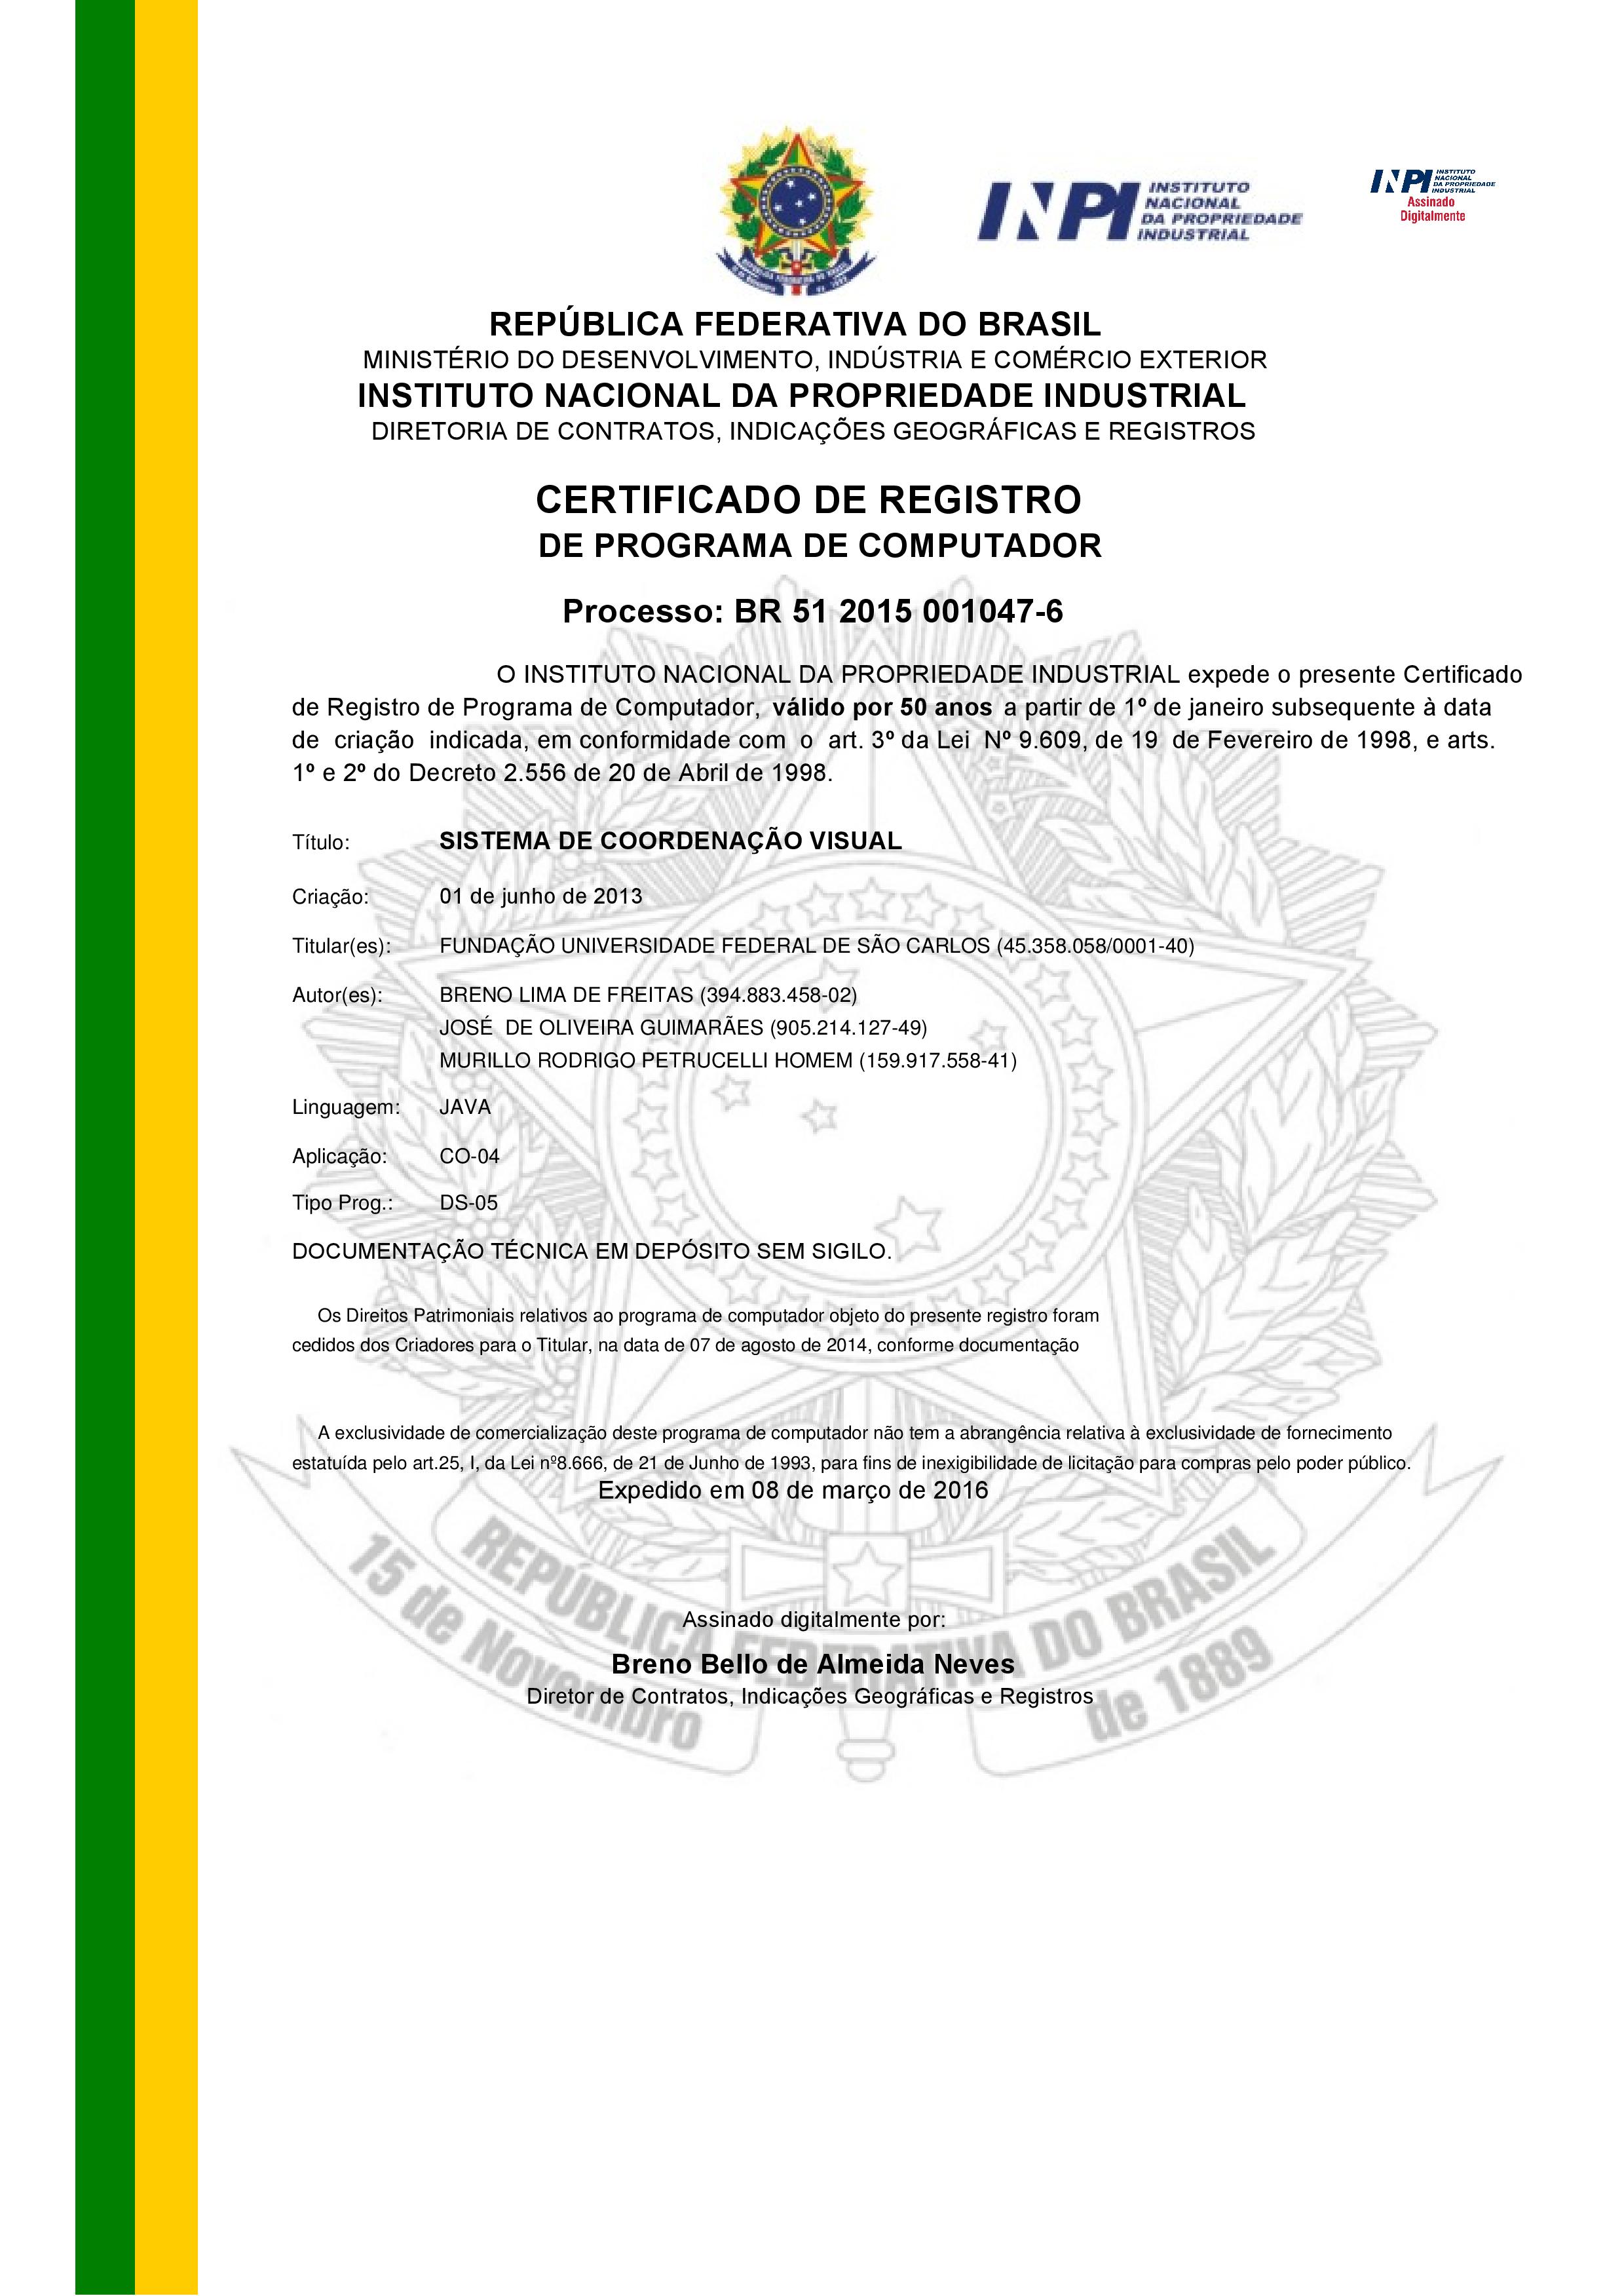 Certificado_Registro-page-001.jpg